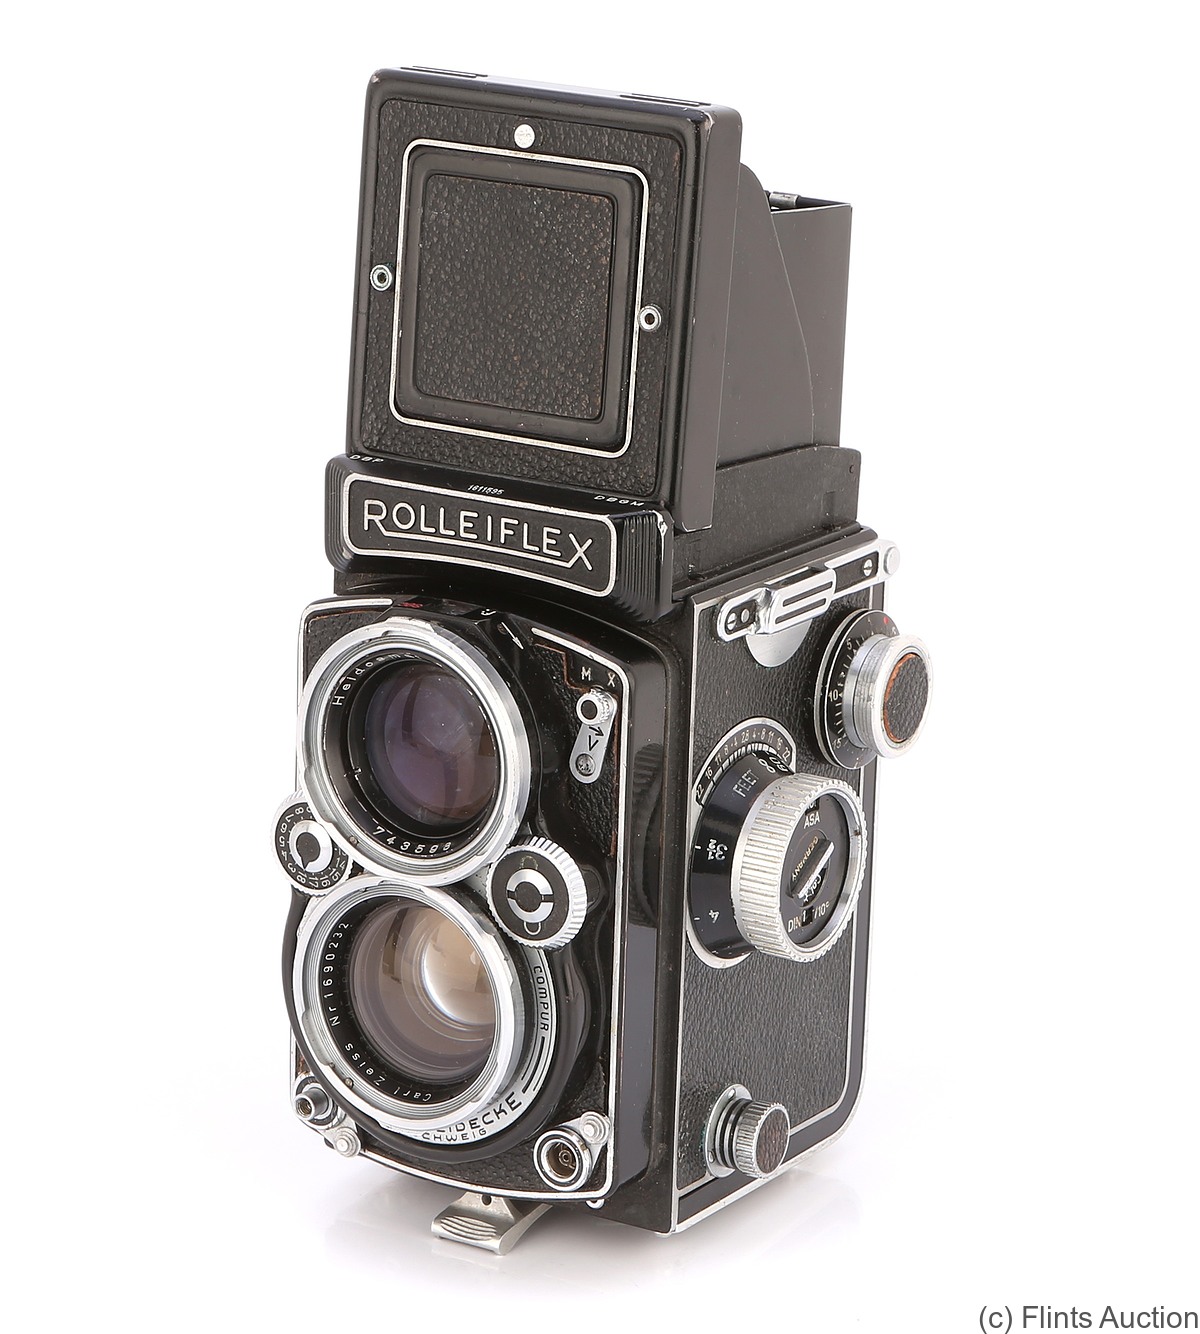 Rollei: Rolleiflex 2.8 D camera